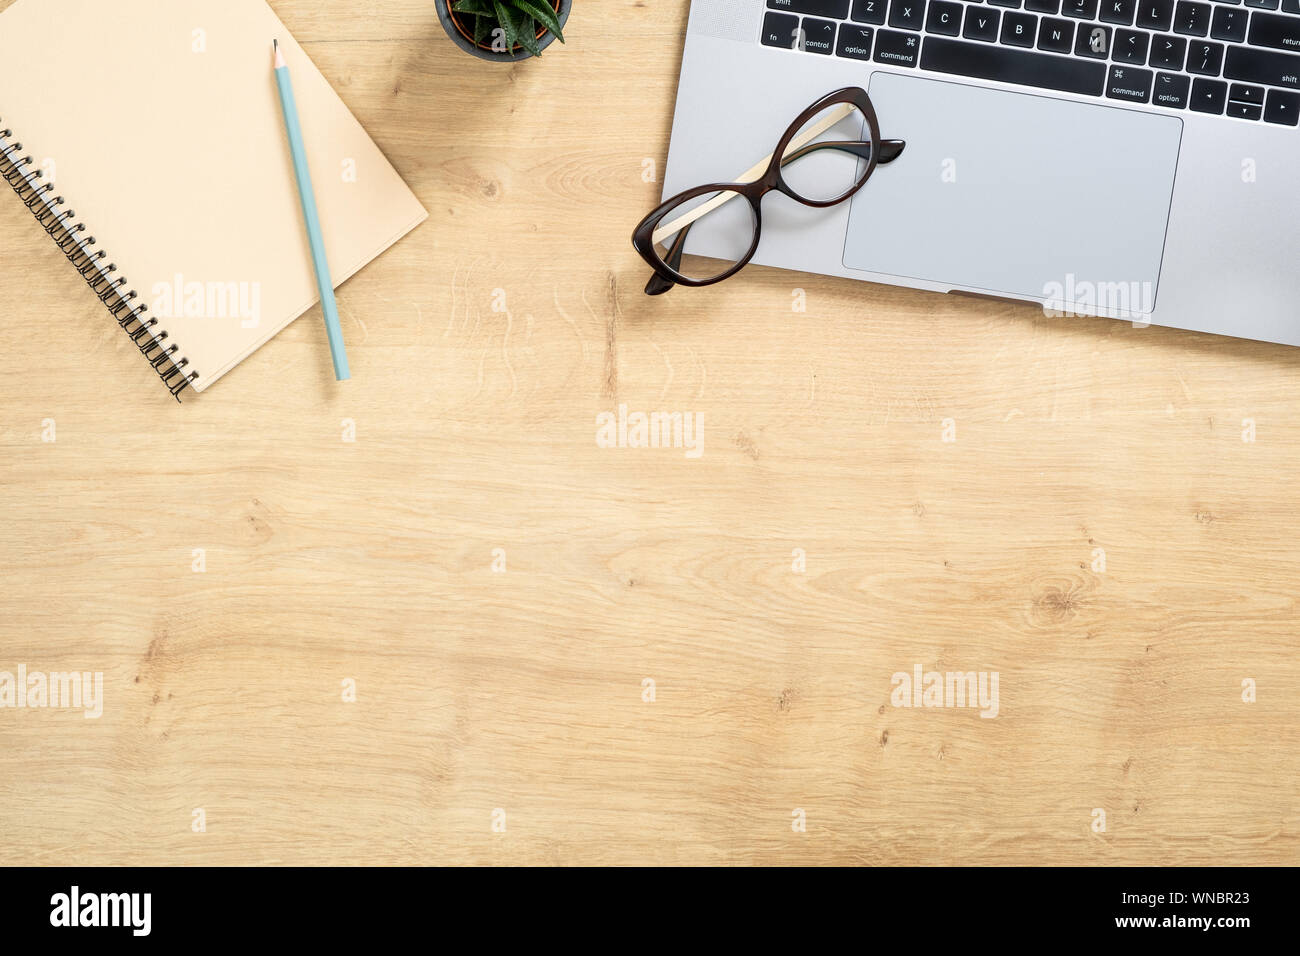 Moderne Holz- büro Schreibtisch Tisch mit Laptop, sukkulente Pflanze, Papier Notizblock, Stift. Ansicht von oben mit der Kopie Raum, flach. Feminine Arbeitsbereich Konz Stockfoto